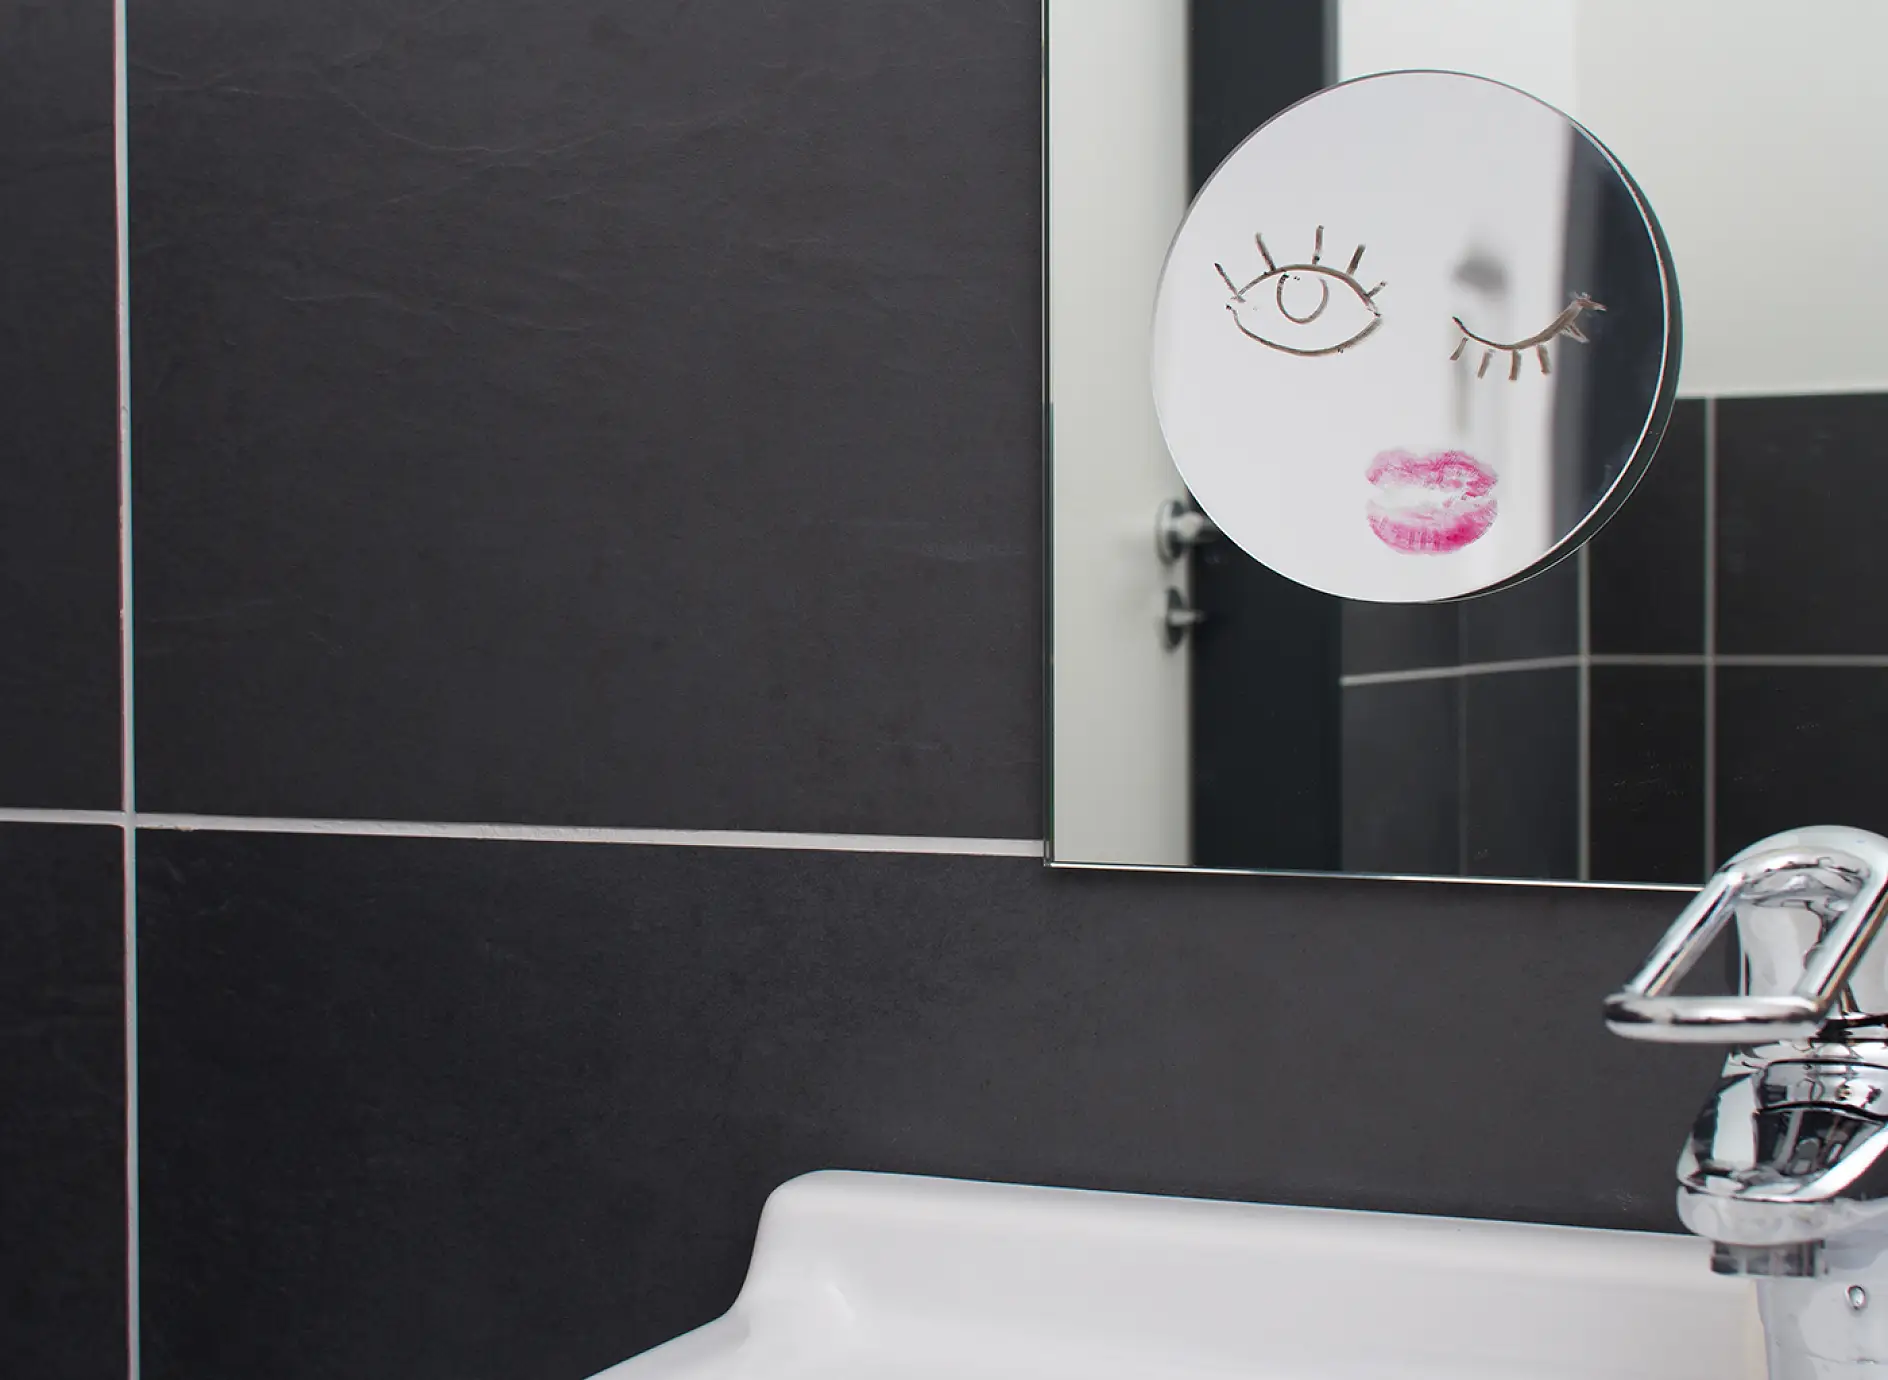 Oglindă pentru camera de baie montată pe perete, cu oglindă mai mică de machiaj atașată.